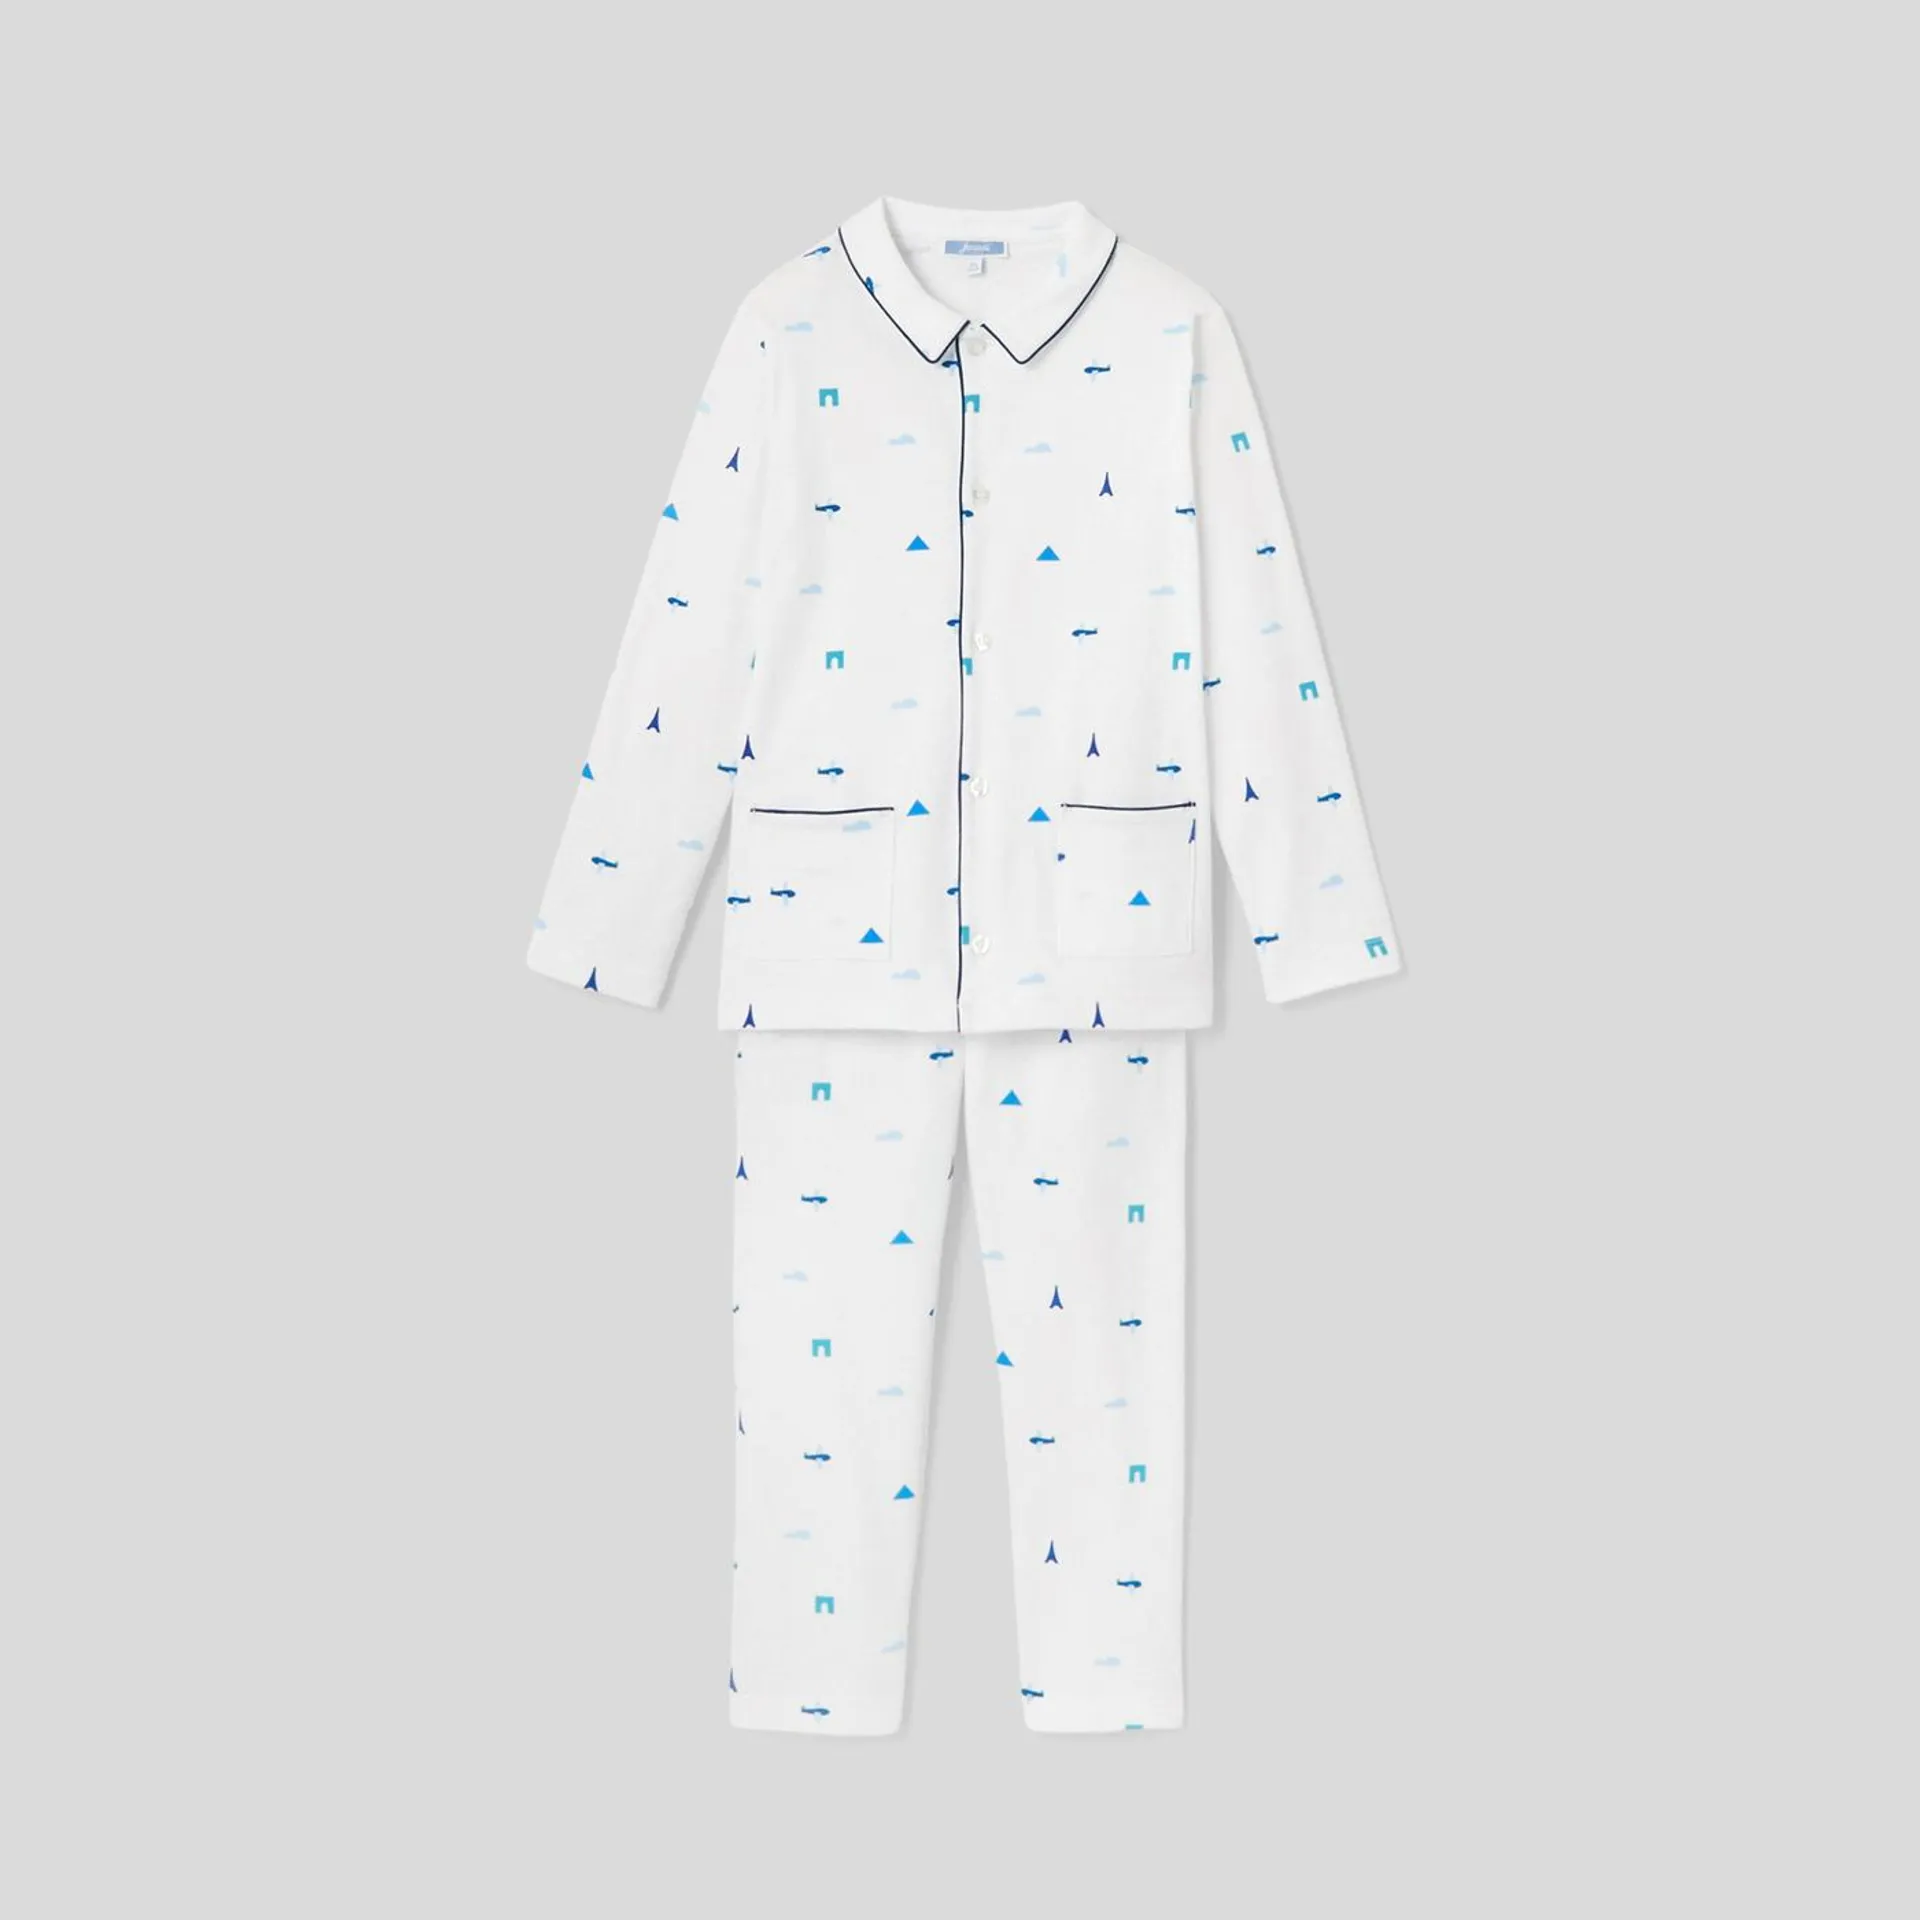 Pijama para niño